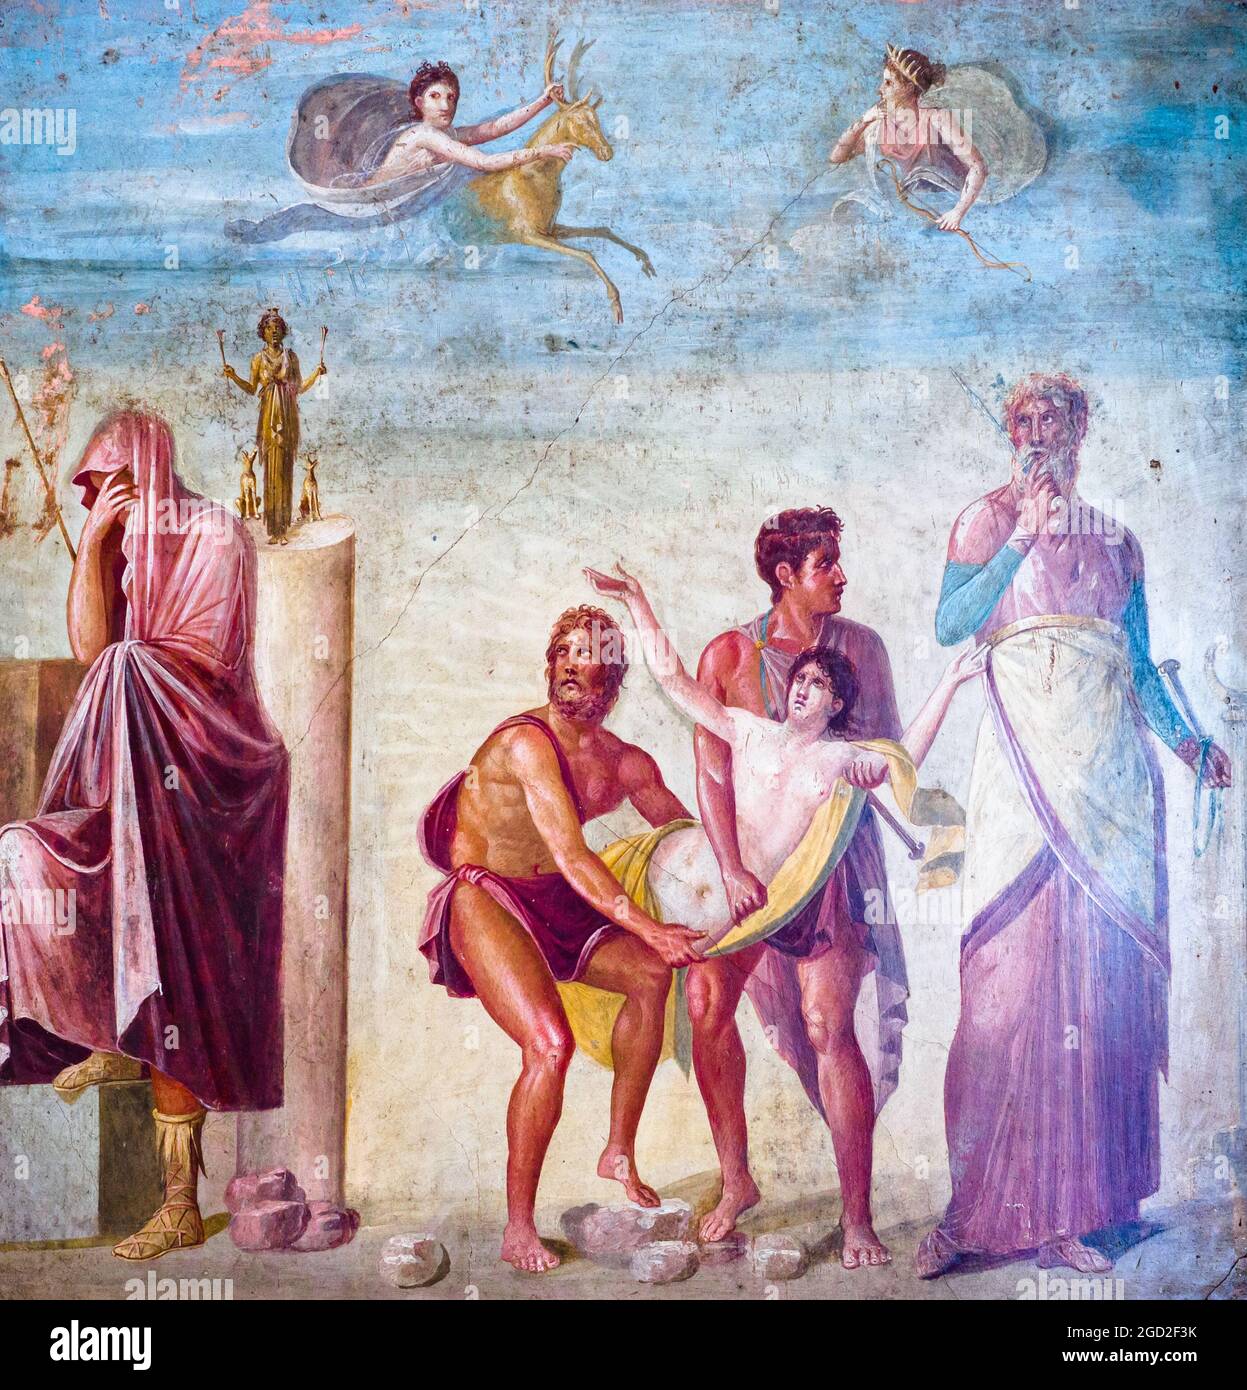 Das Opfer von Iphigenia der Prophet Calchas, um die Reise der achäischen Schiffe nach Troja zu begünstigen, erlegt das Opfer von Iphigenia, in Anwesenheit ihres entsetzten Vaters Agamemnon, sowie Ulysses und Diomedes. Die Geschichte, inspiriert von Euripides' Iphigenie in Aulide, wird gelöst, indem das junge Mädchen durch einen Hirsch ersetzt wird, der von Artemis fresco Pompeji, Casa del Poeta Tragico (Haus des tragischen Dichters) 45-79 n. Chr. geschickt wurde Stockfoto